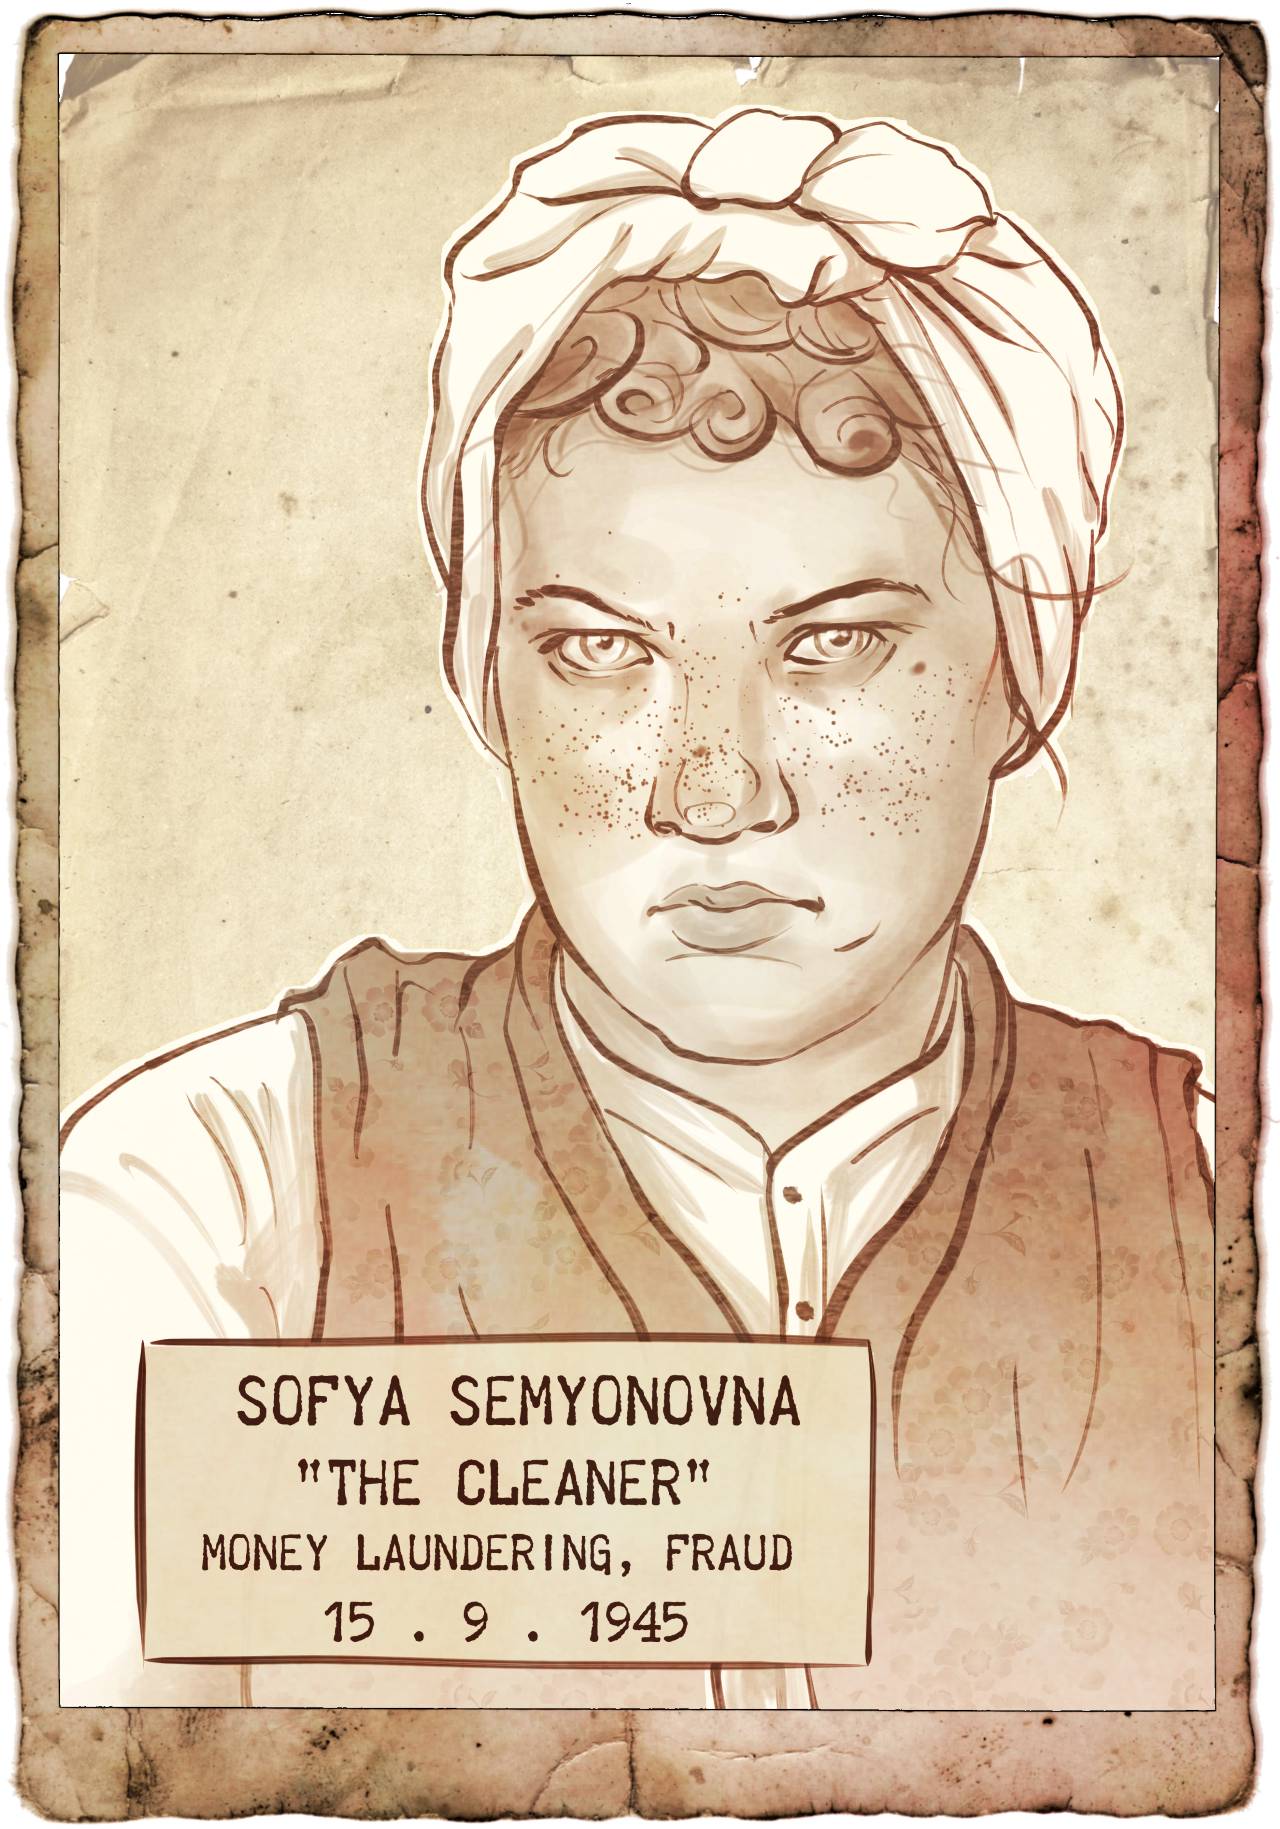 Sofya Semyonovna